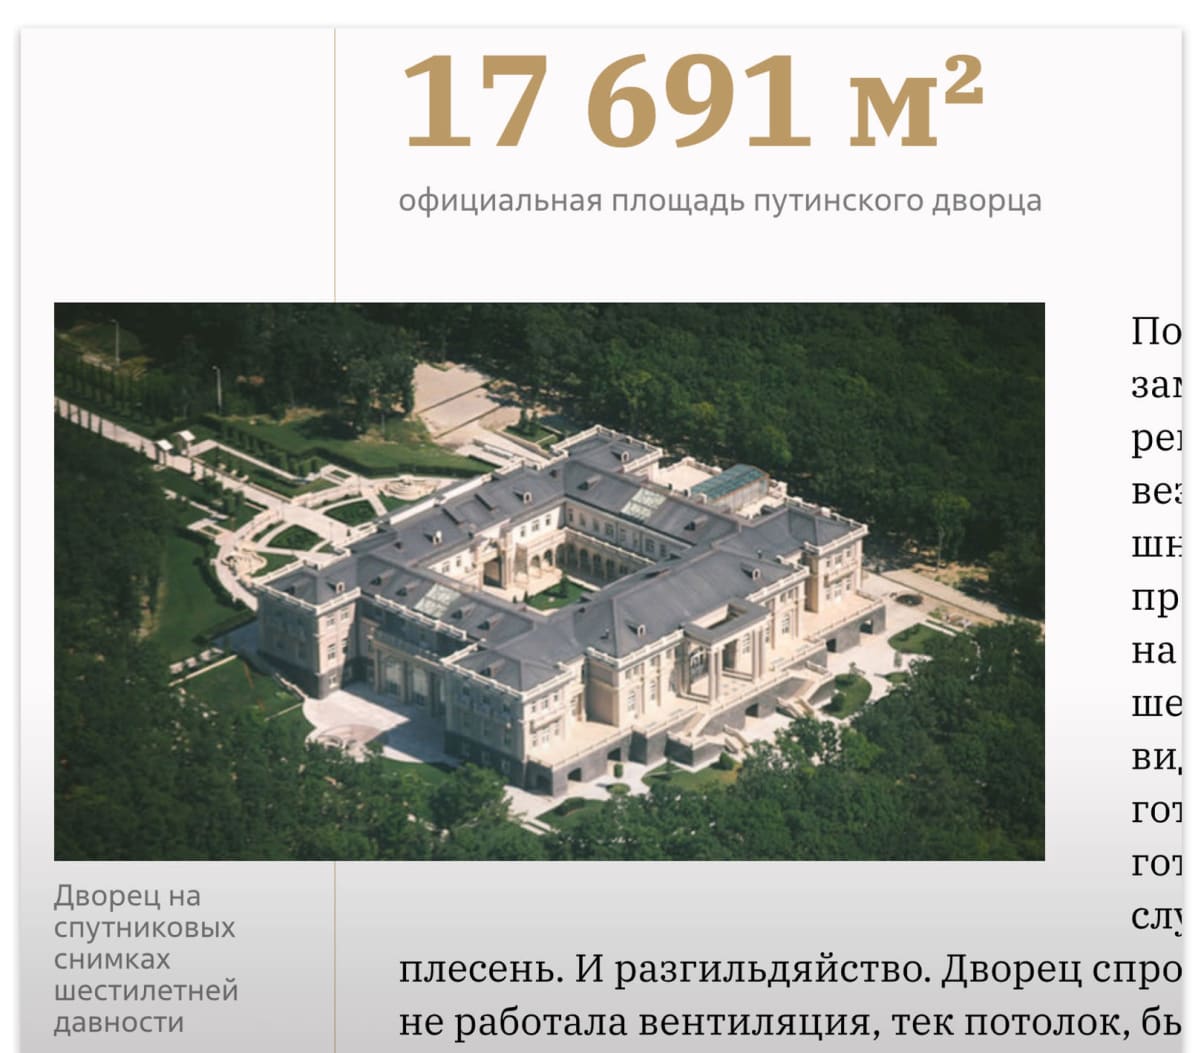 Kuvakaappaus sivustolta: ilmakuva Putinin palatsista